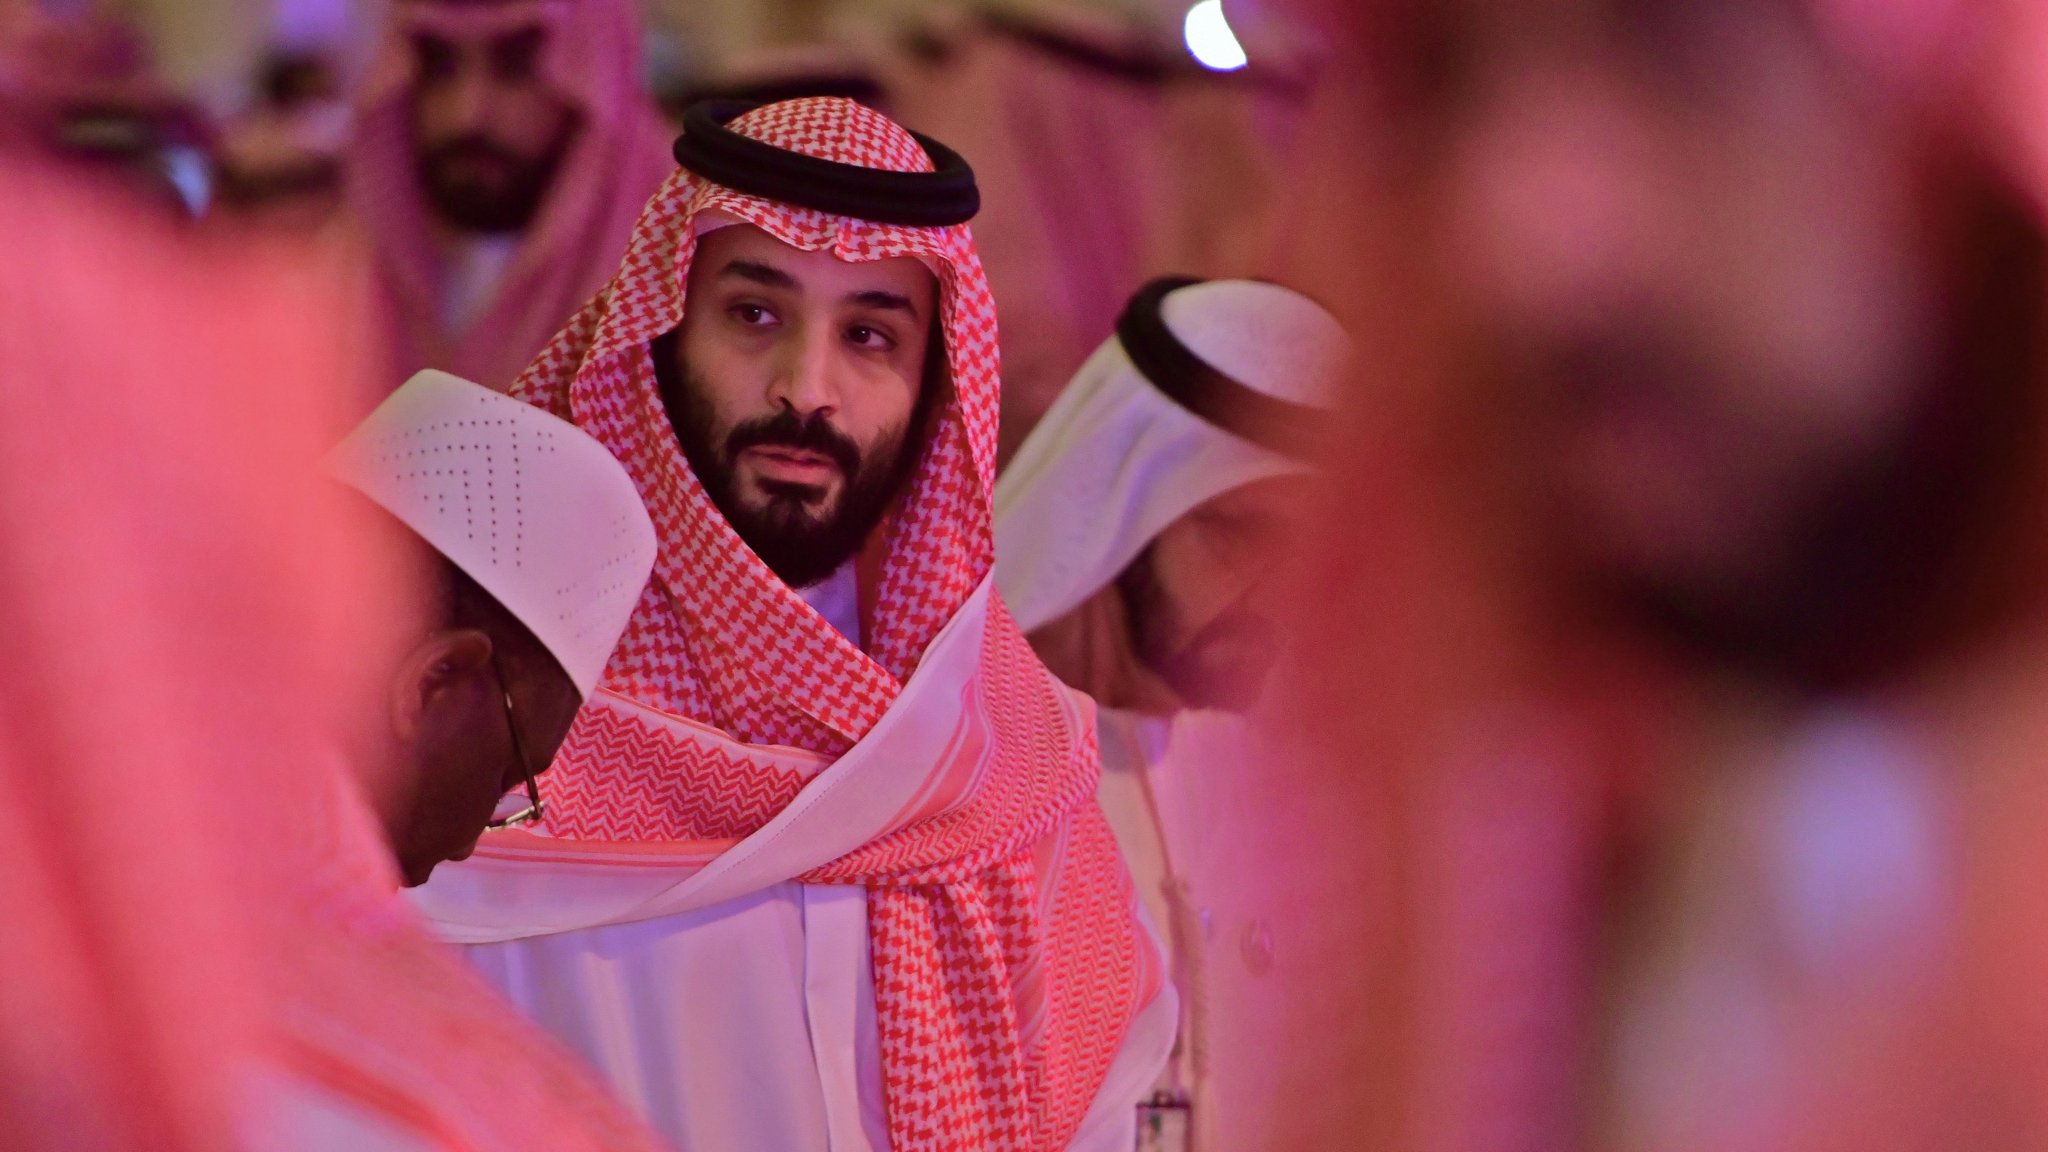 محمد بن سلمان يعامل السعوديين مثل العبيد ويحظر أي حقوق لهم